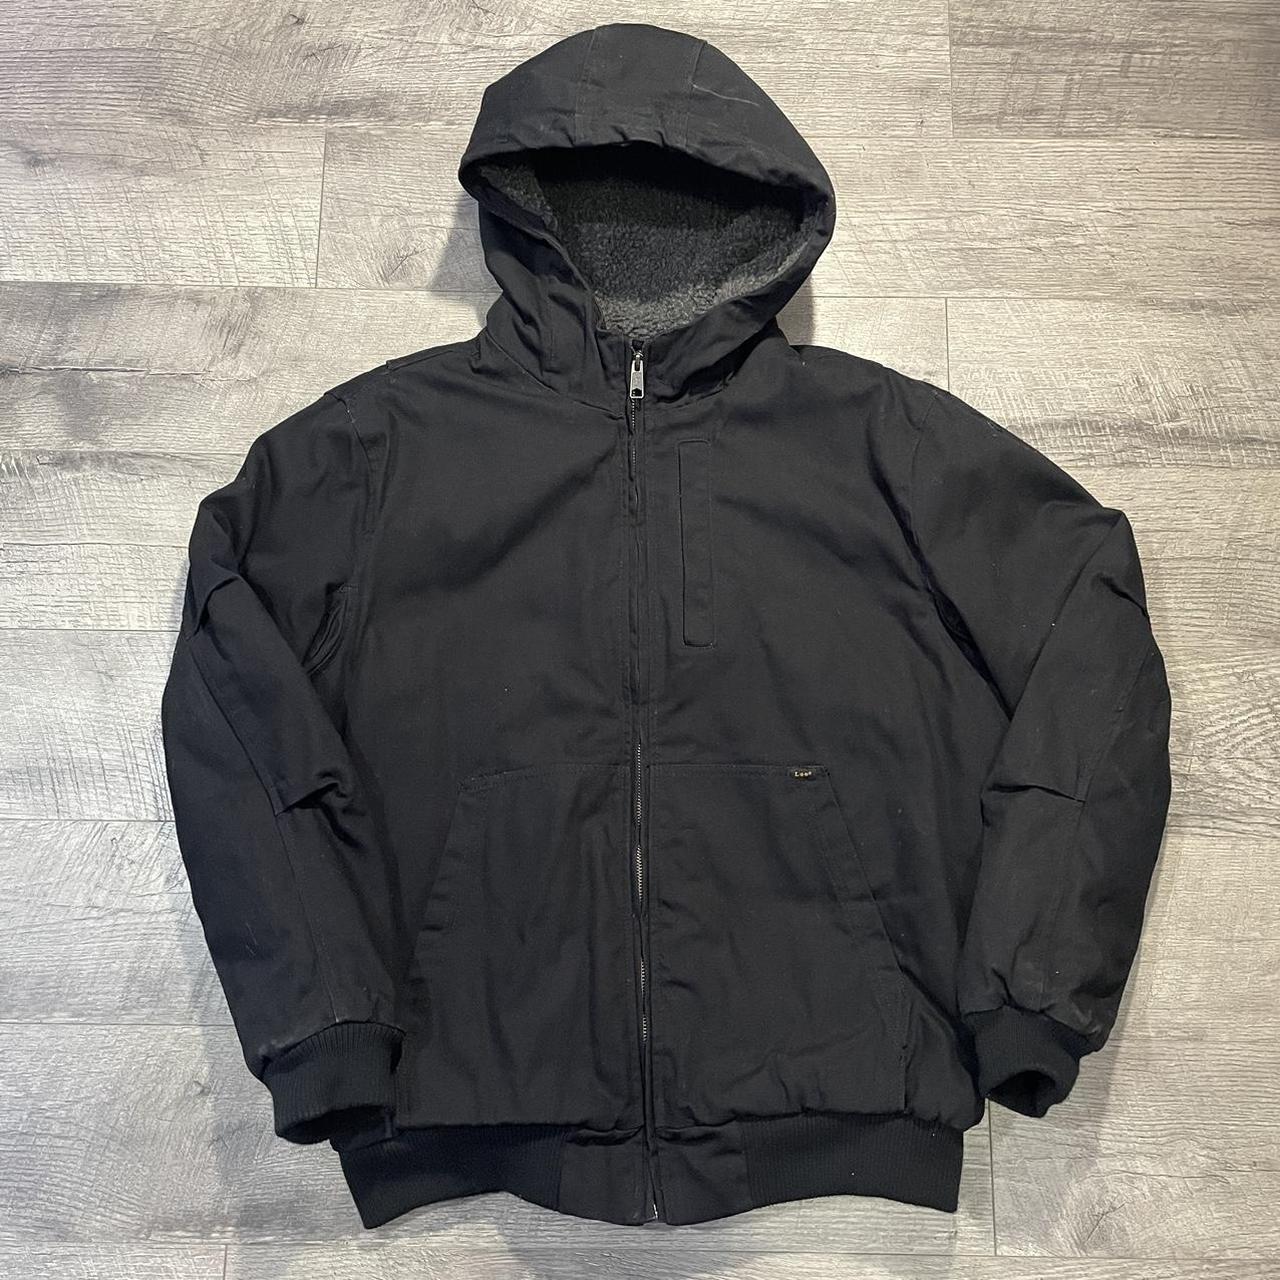 Workwear jacket DESCRIPTION: Black Sherpa lining... - Depop